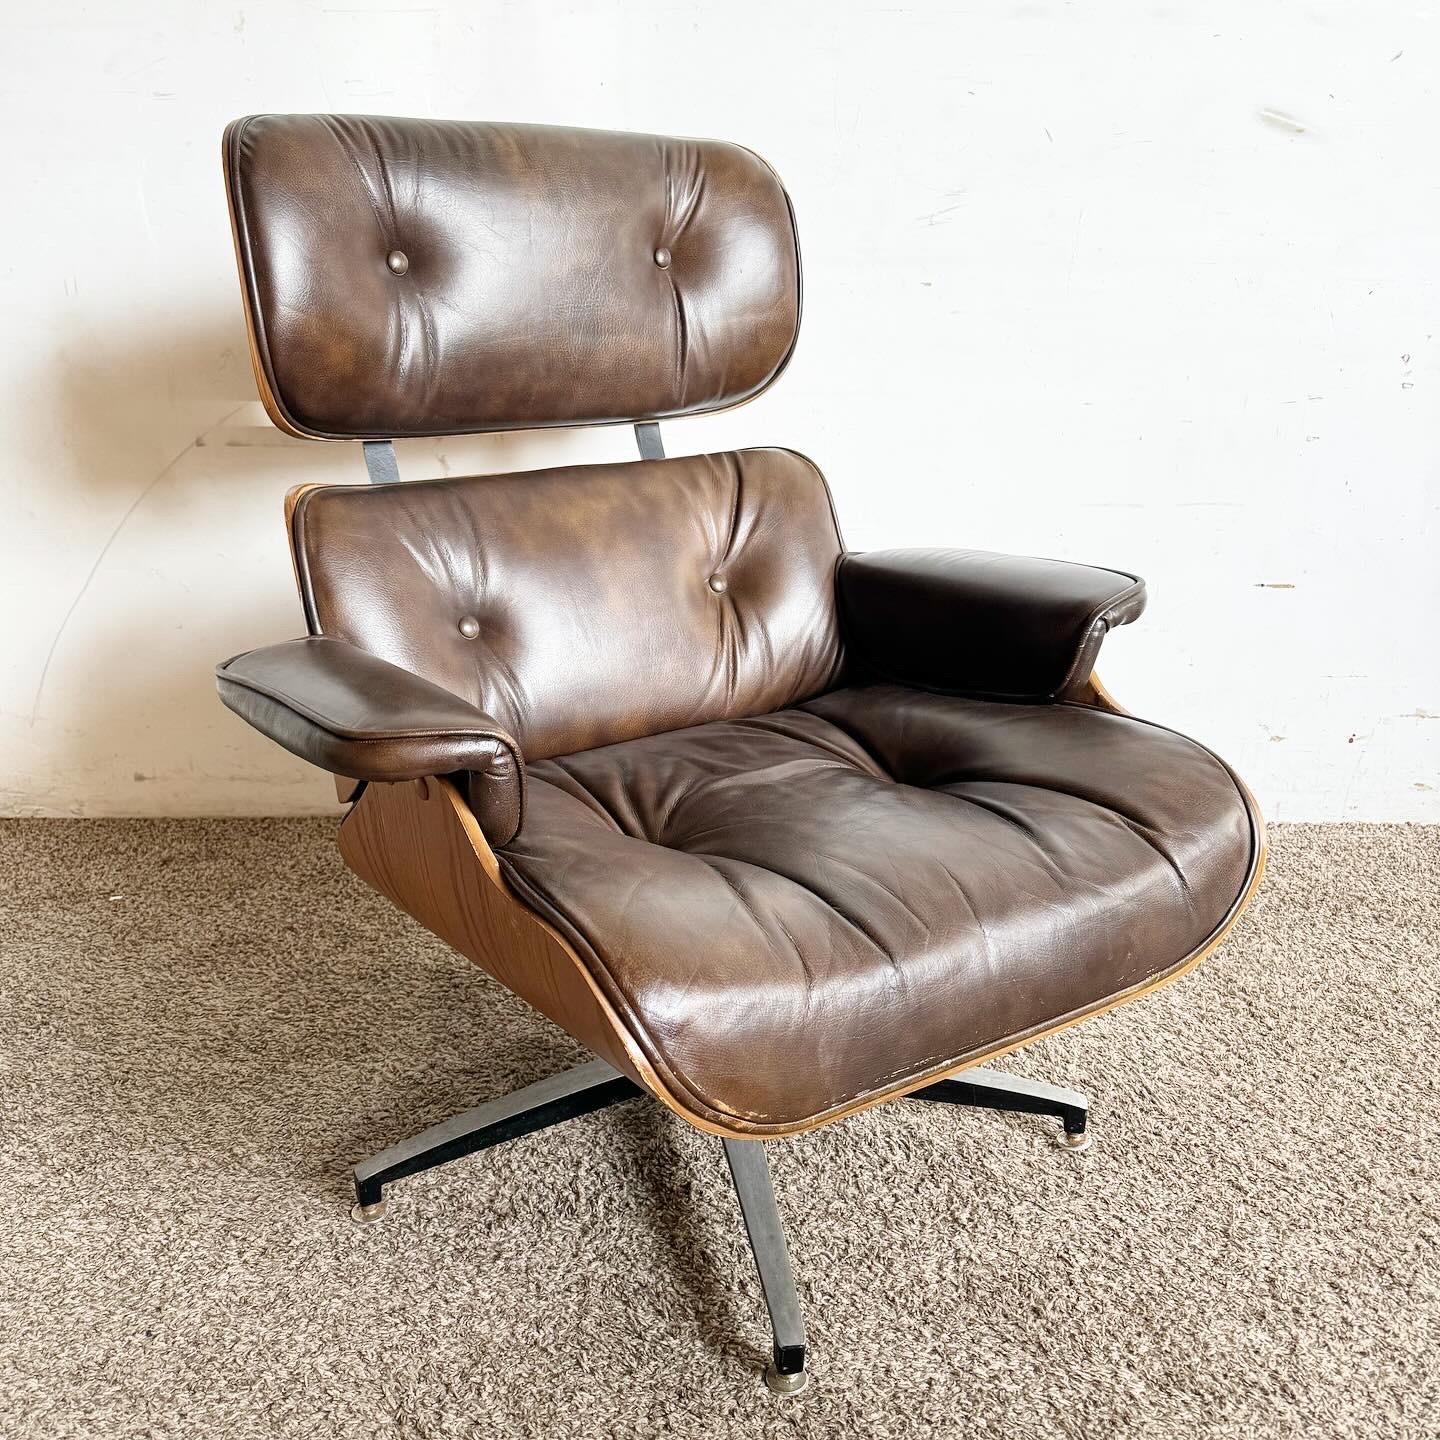 Freuen Sie sich auf den ikonischen Mid Century Modern Eames Style Lounge Chair von Frank Doerner für Plycraft. Dieses Möbelstück verbindet ergonomischen Komfort mit zeitlosem Design, mit hochwertigem Leder und einem geschwungenen Holzrahmen, der